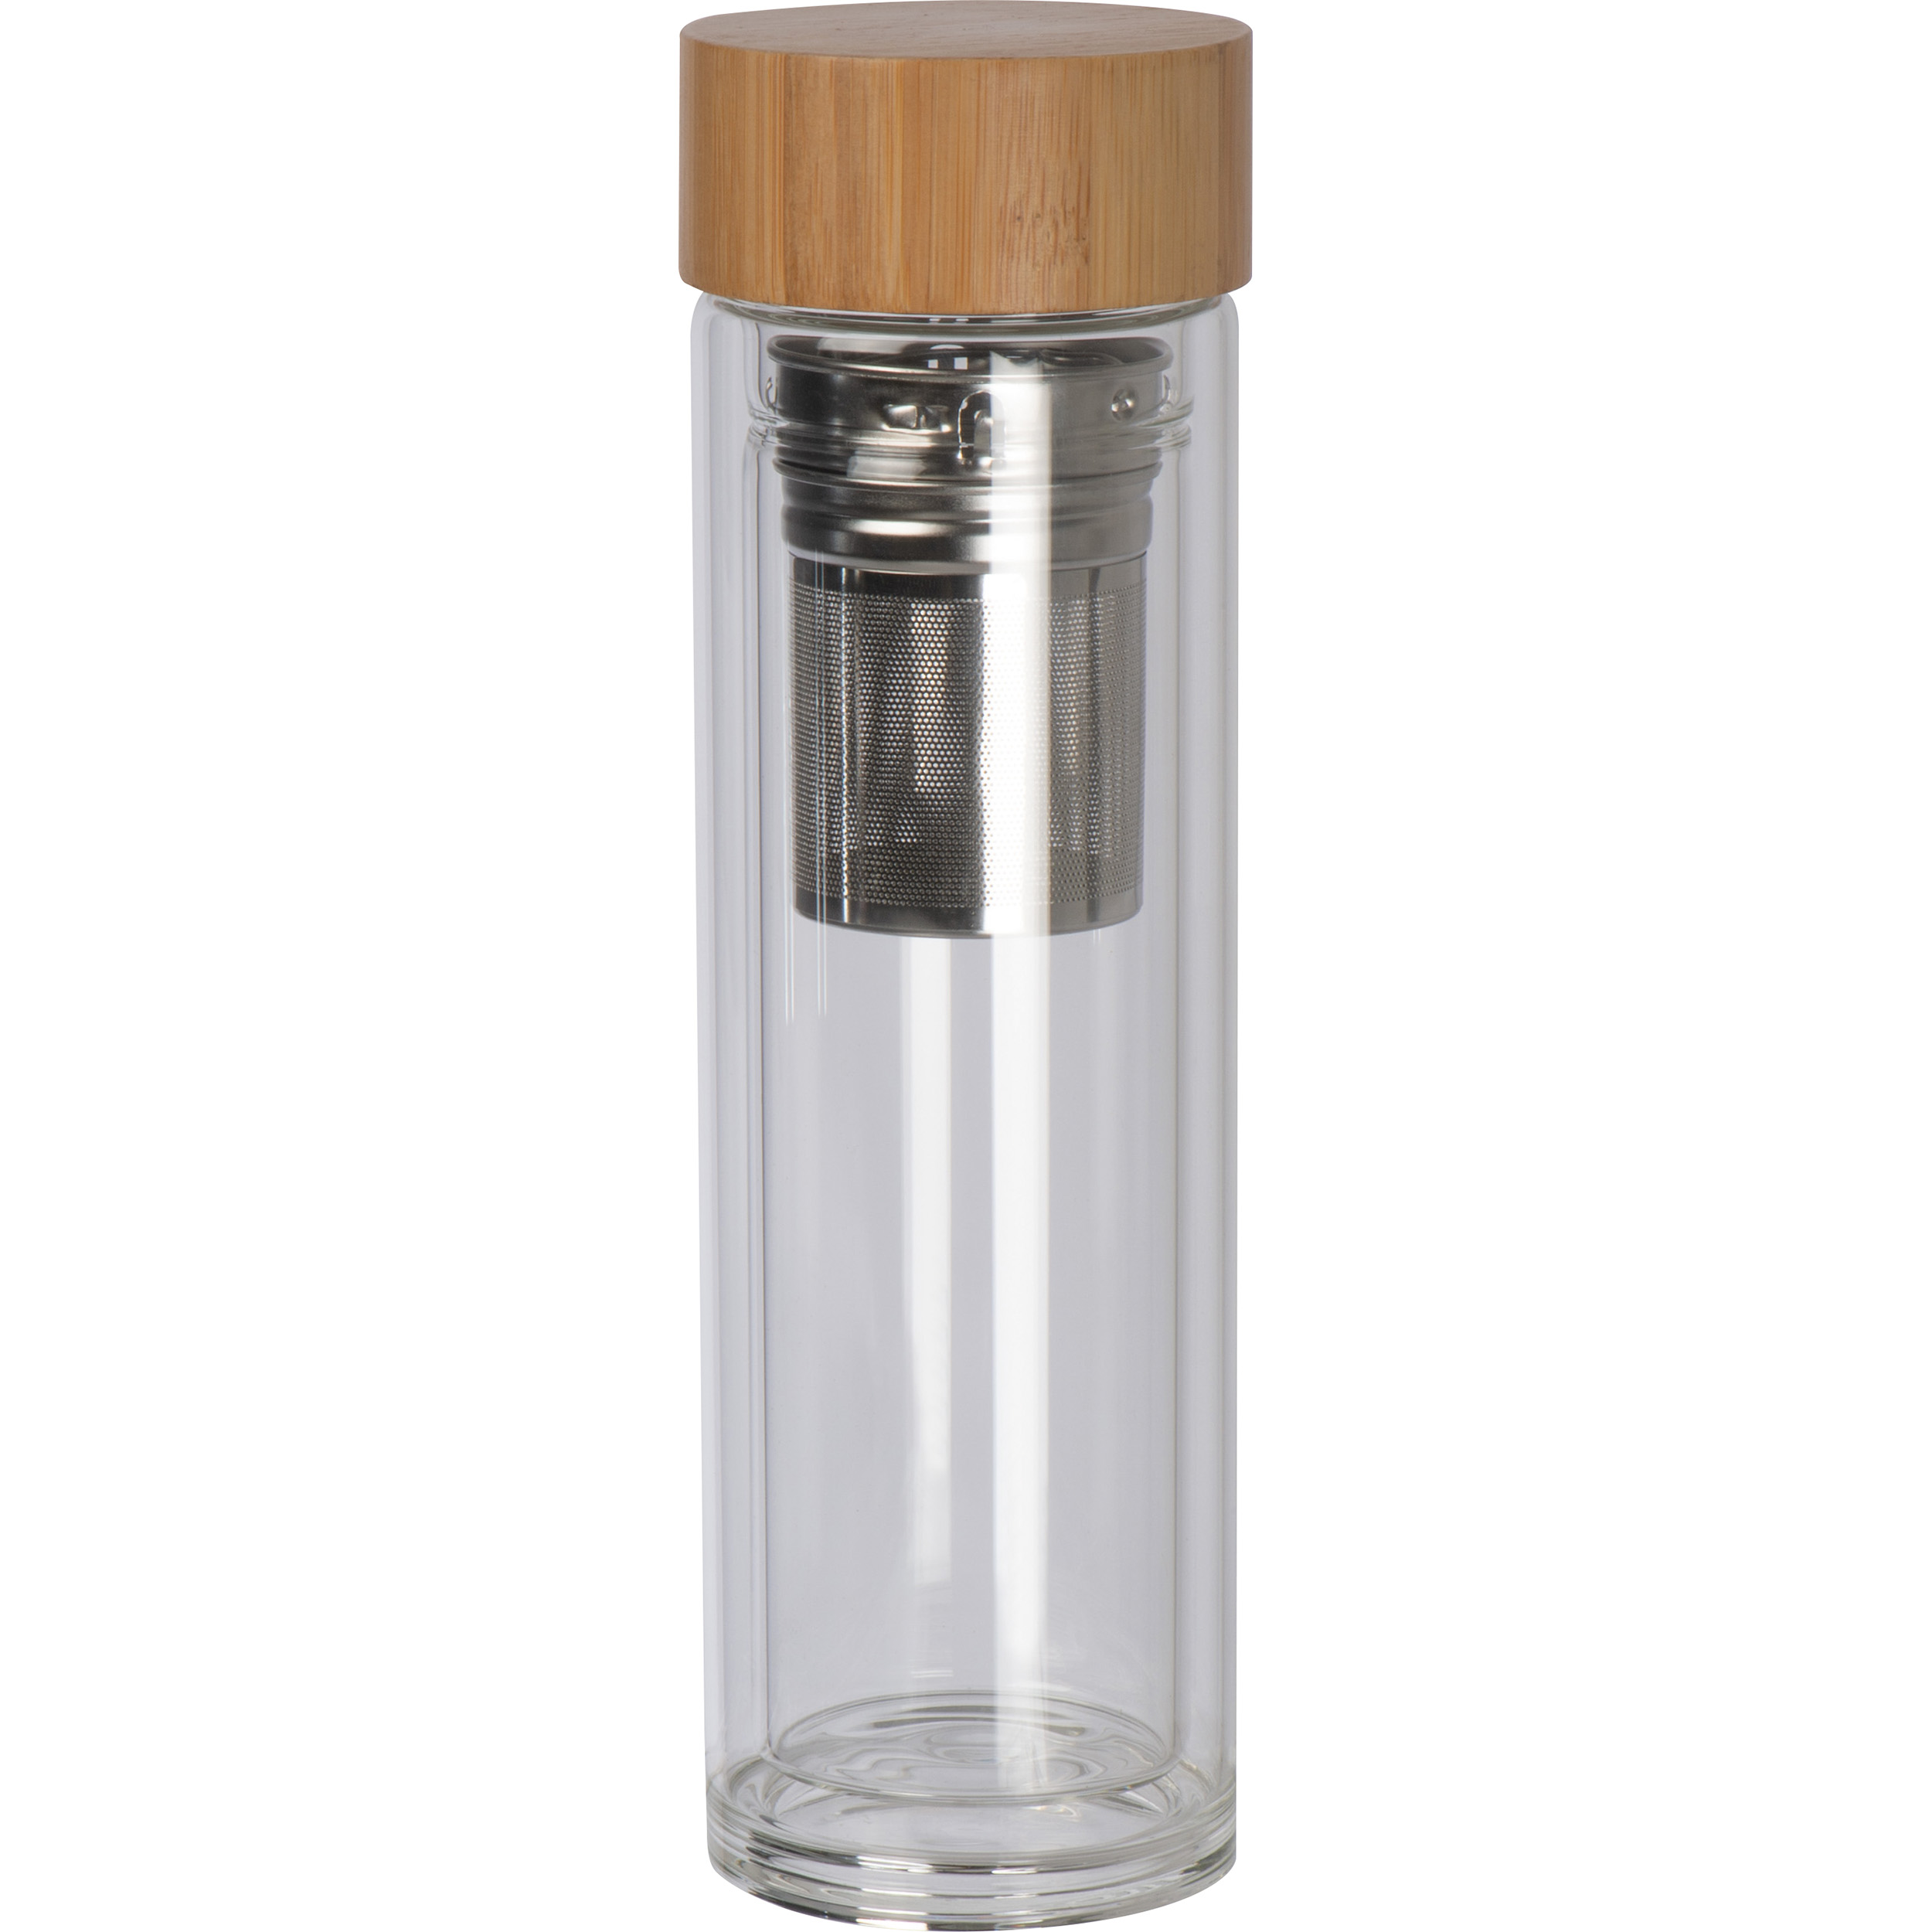 Glasflasche mit Deckel aus Bambus und einem Füllvermögen von 420 ml